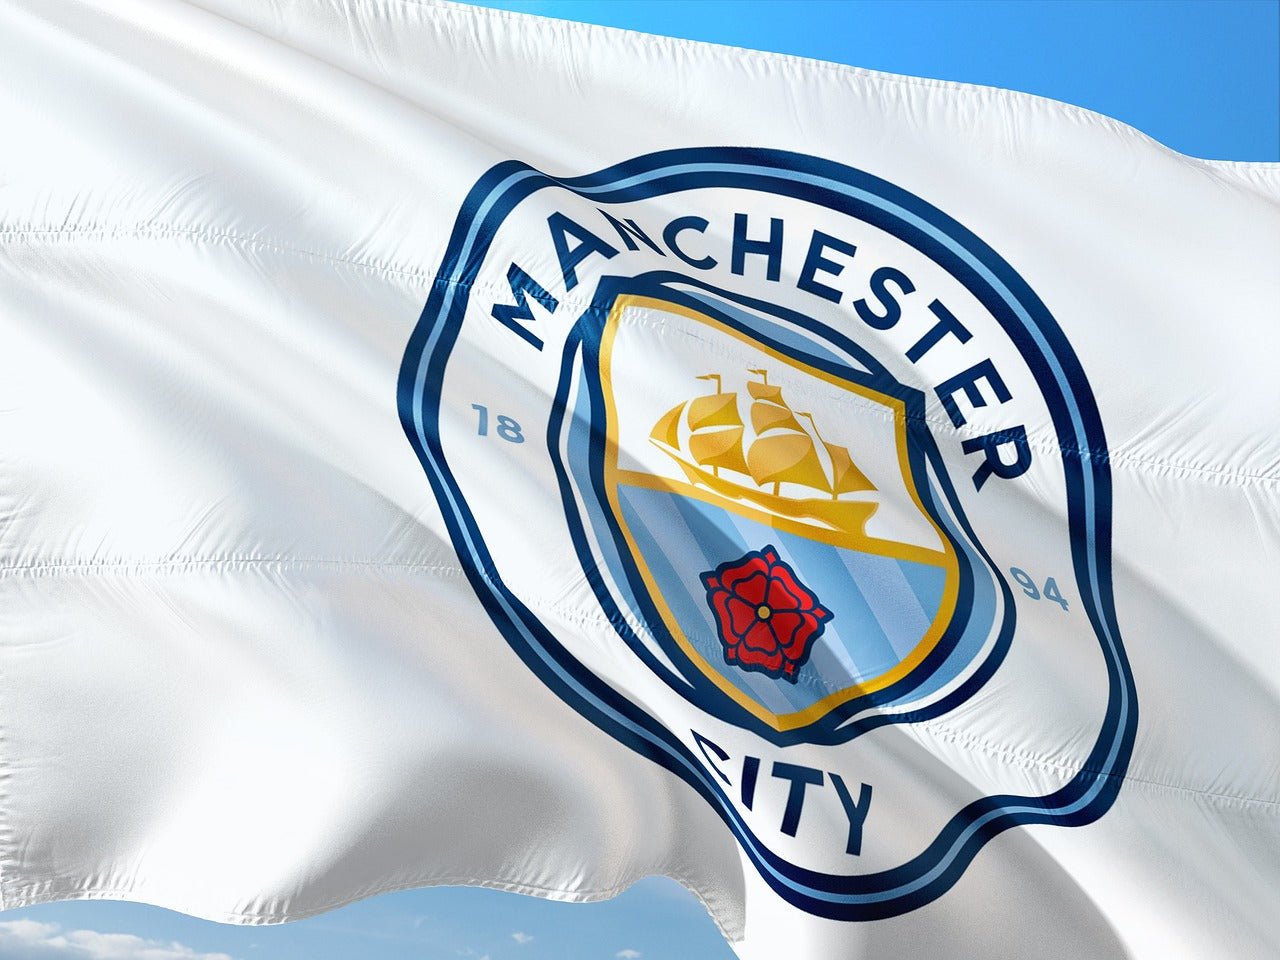 Die Flagge vom Fussballverein Manchester City